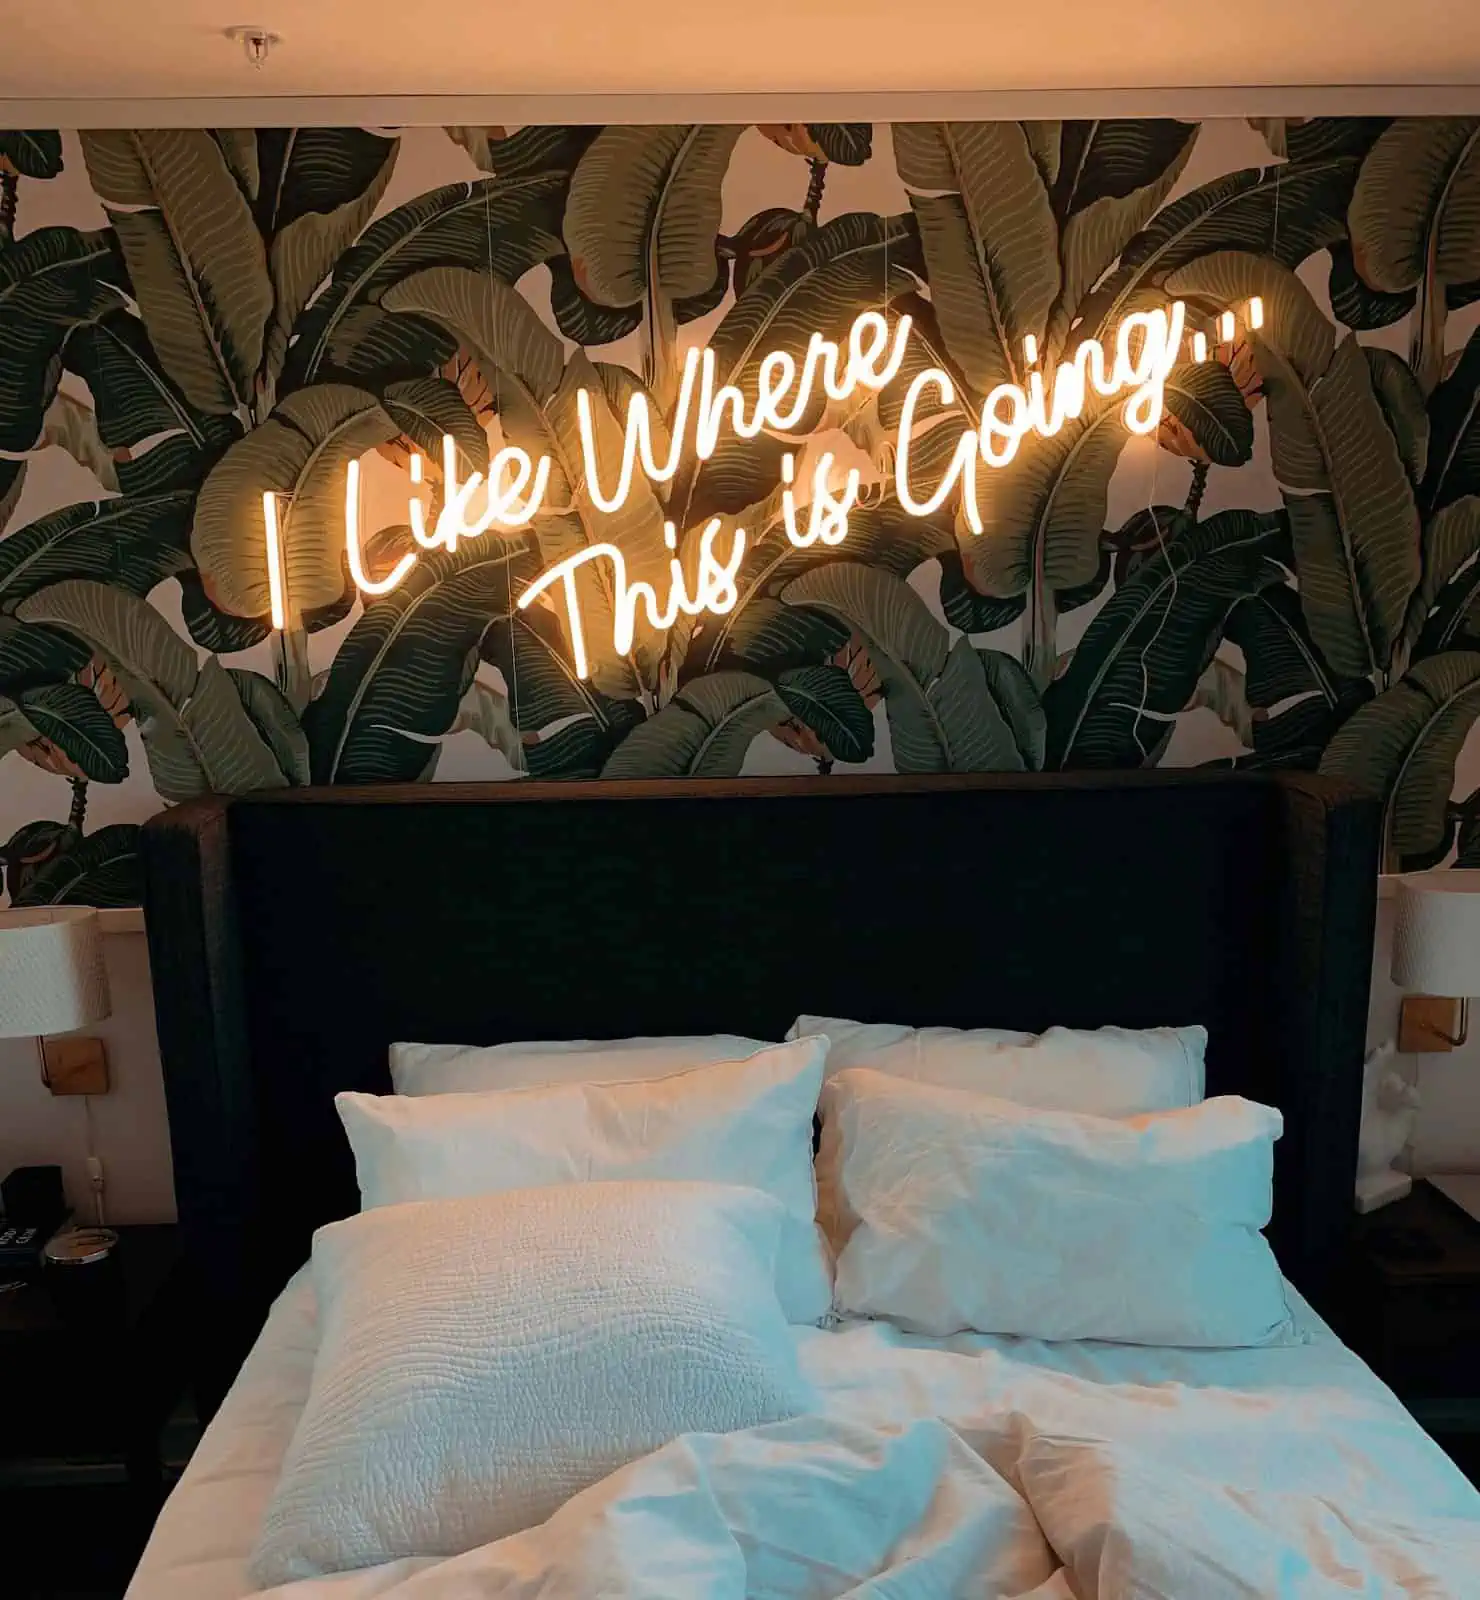 citate neoni mbi shtrat